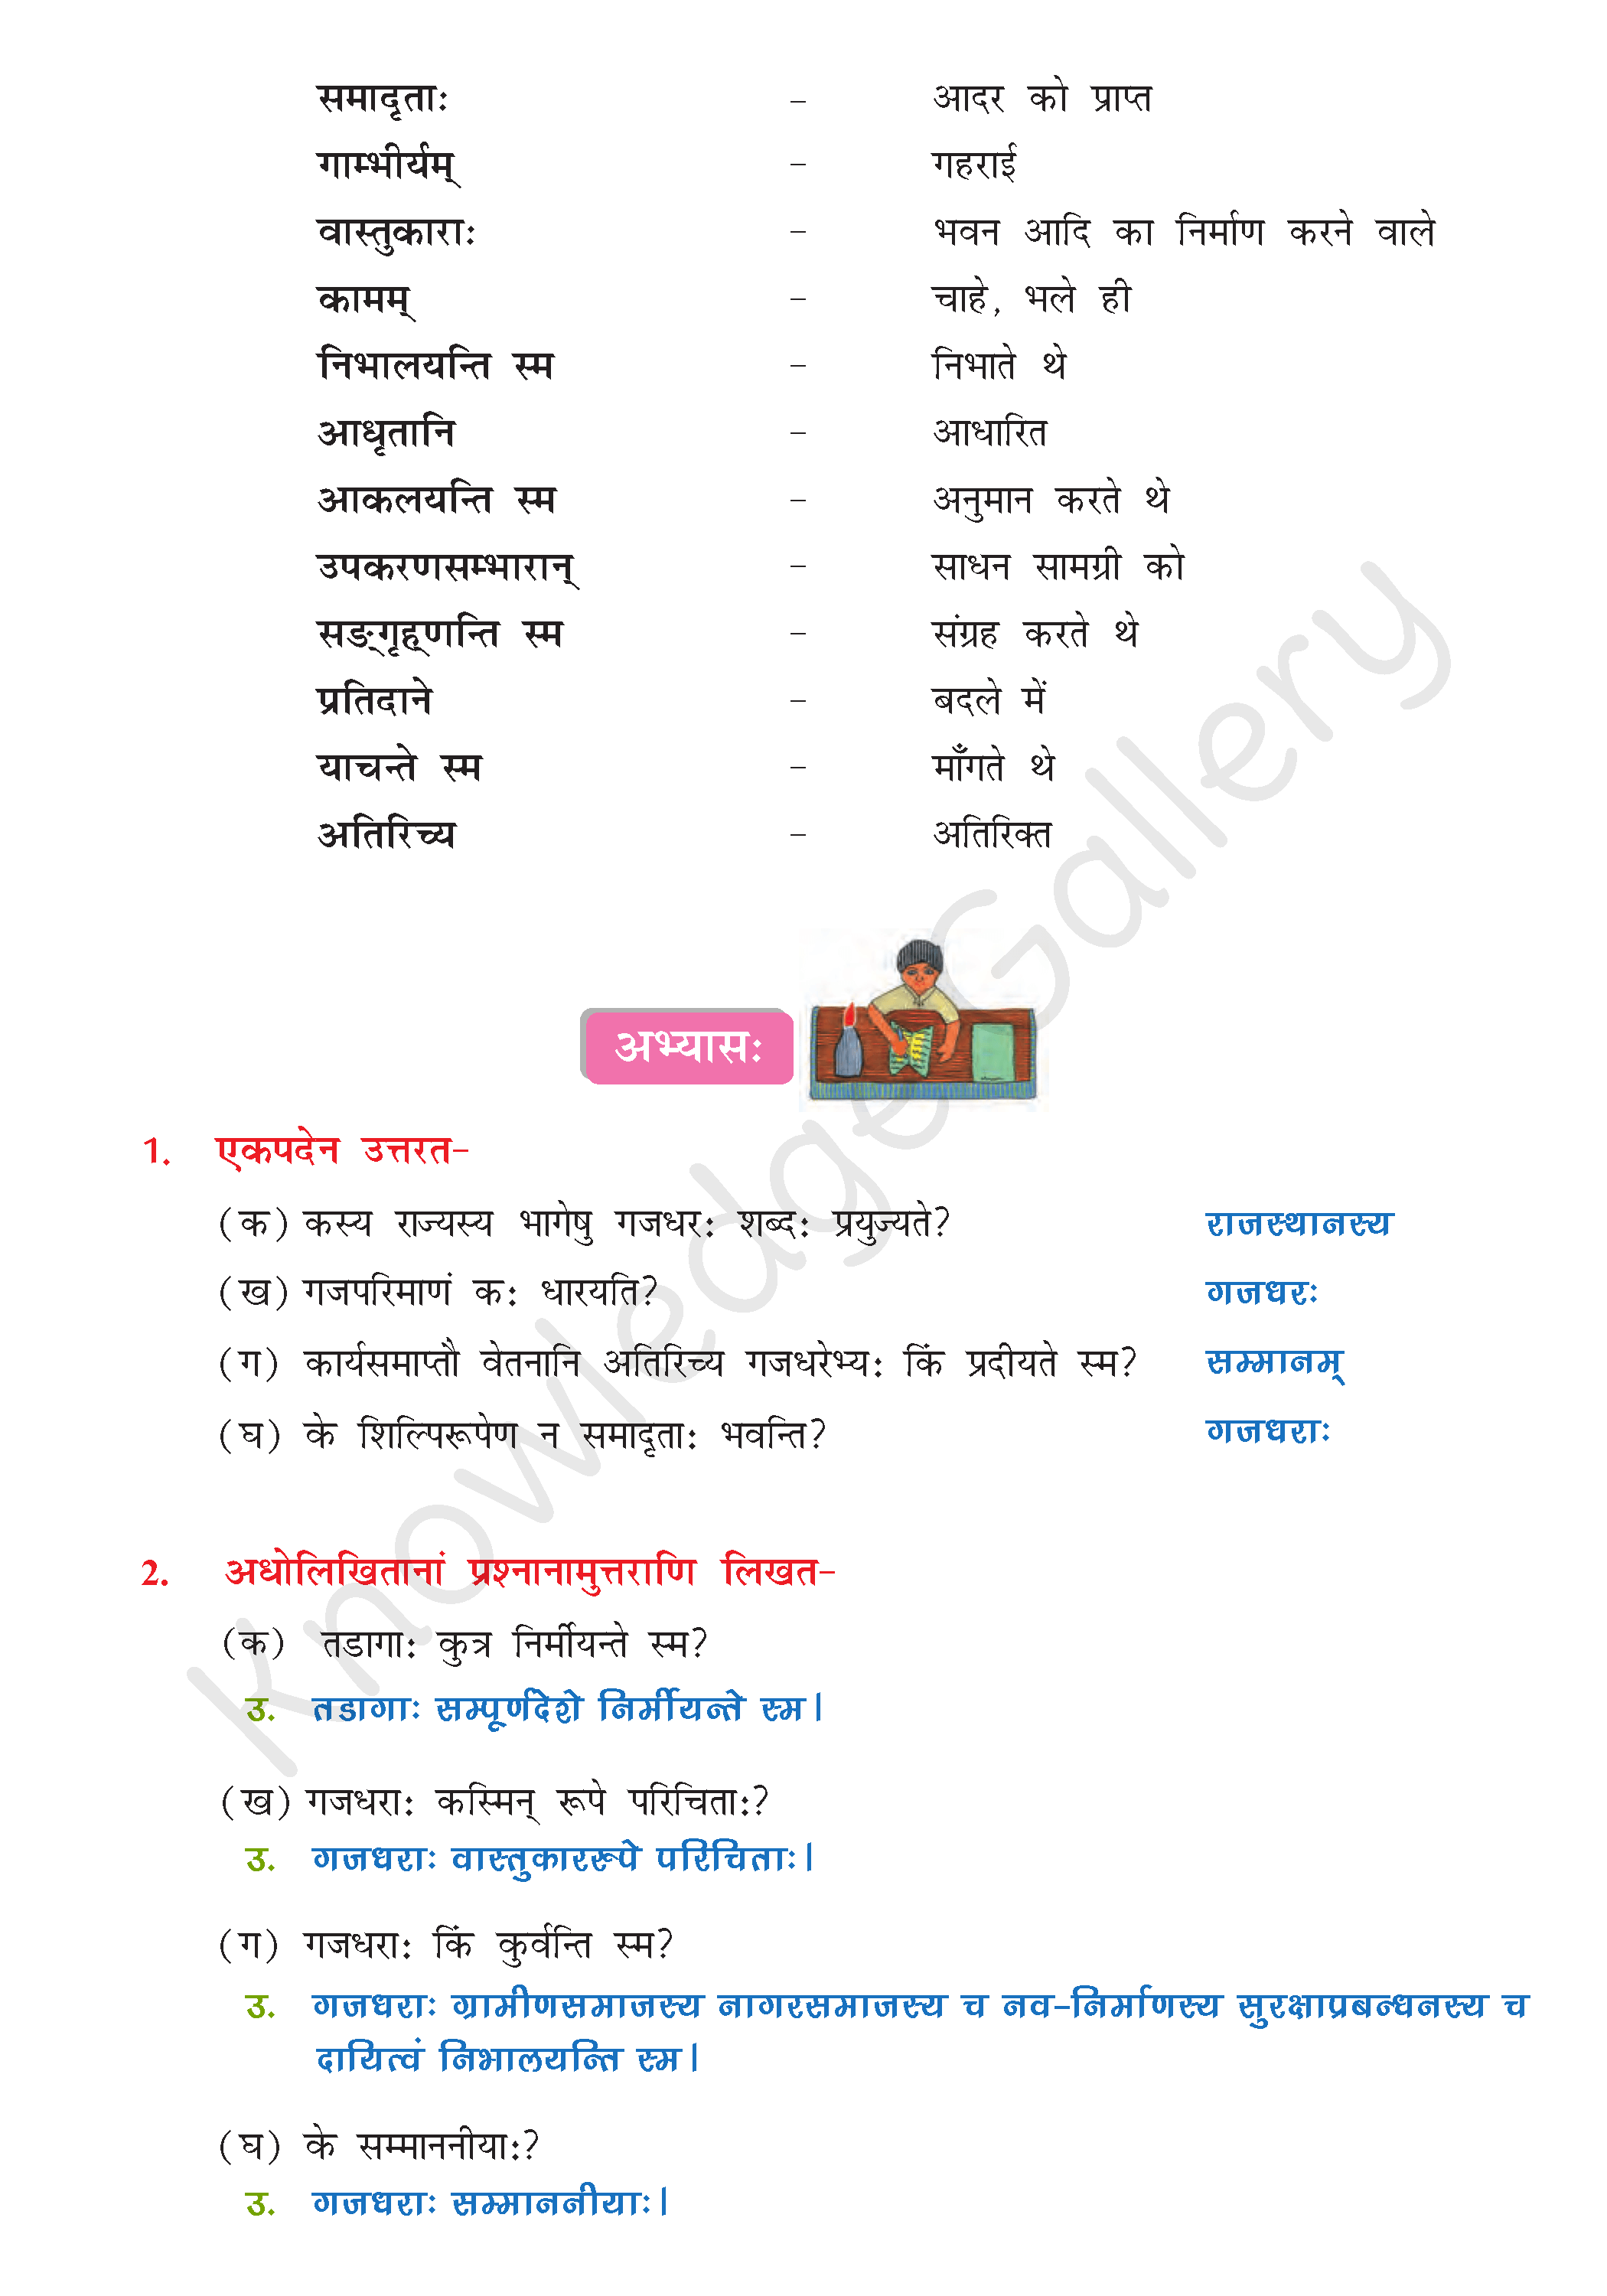 NCERT Solution For Class 8 Sanskrit Chapter 8 part 4